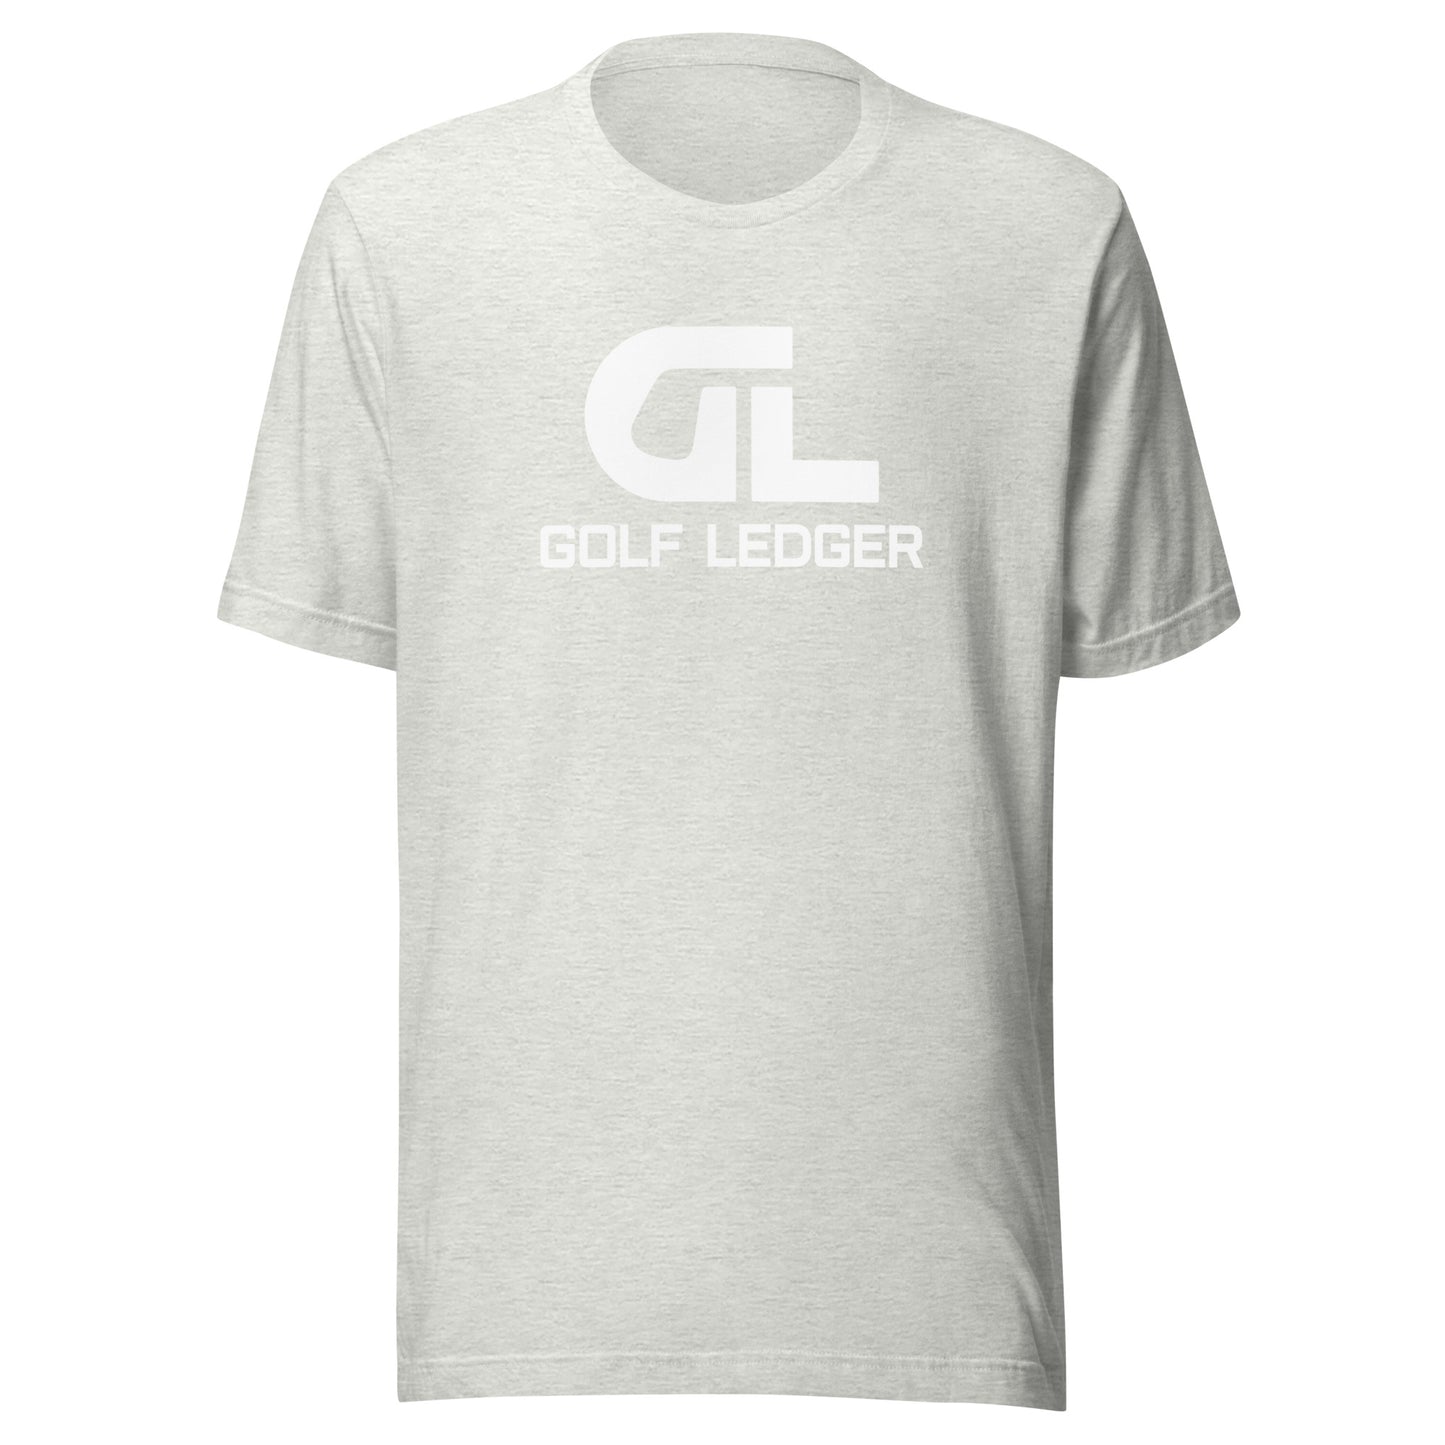 Golf Ledger Logo Tee